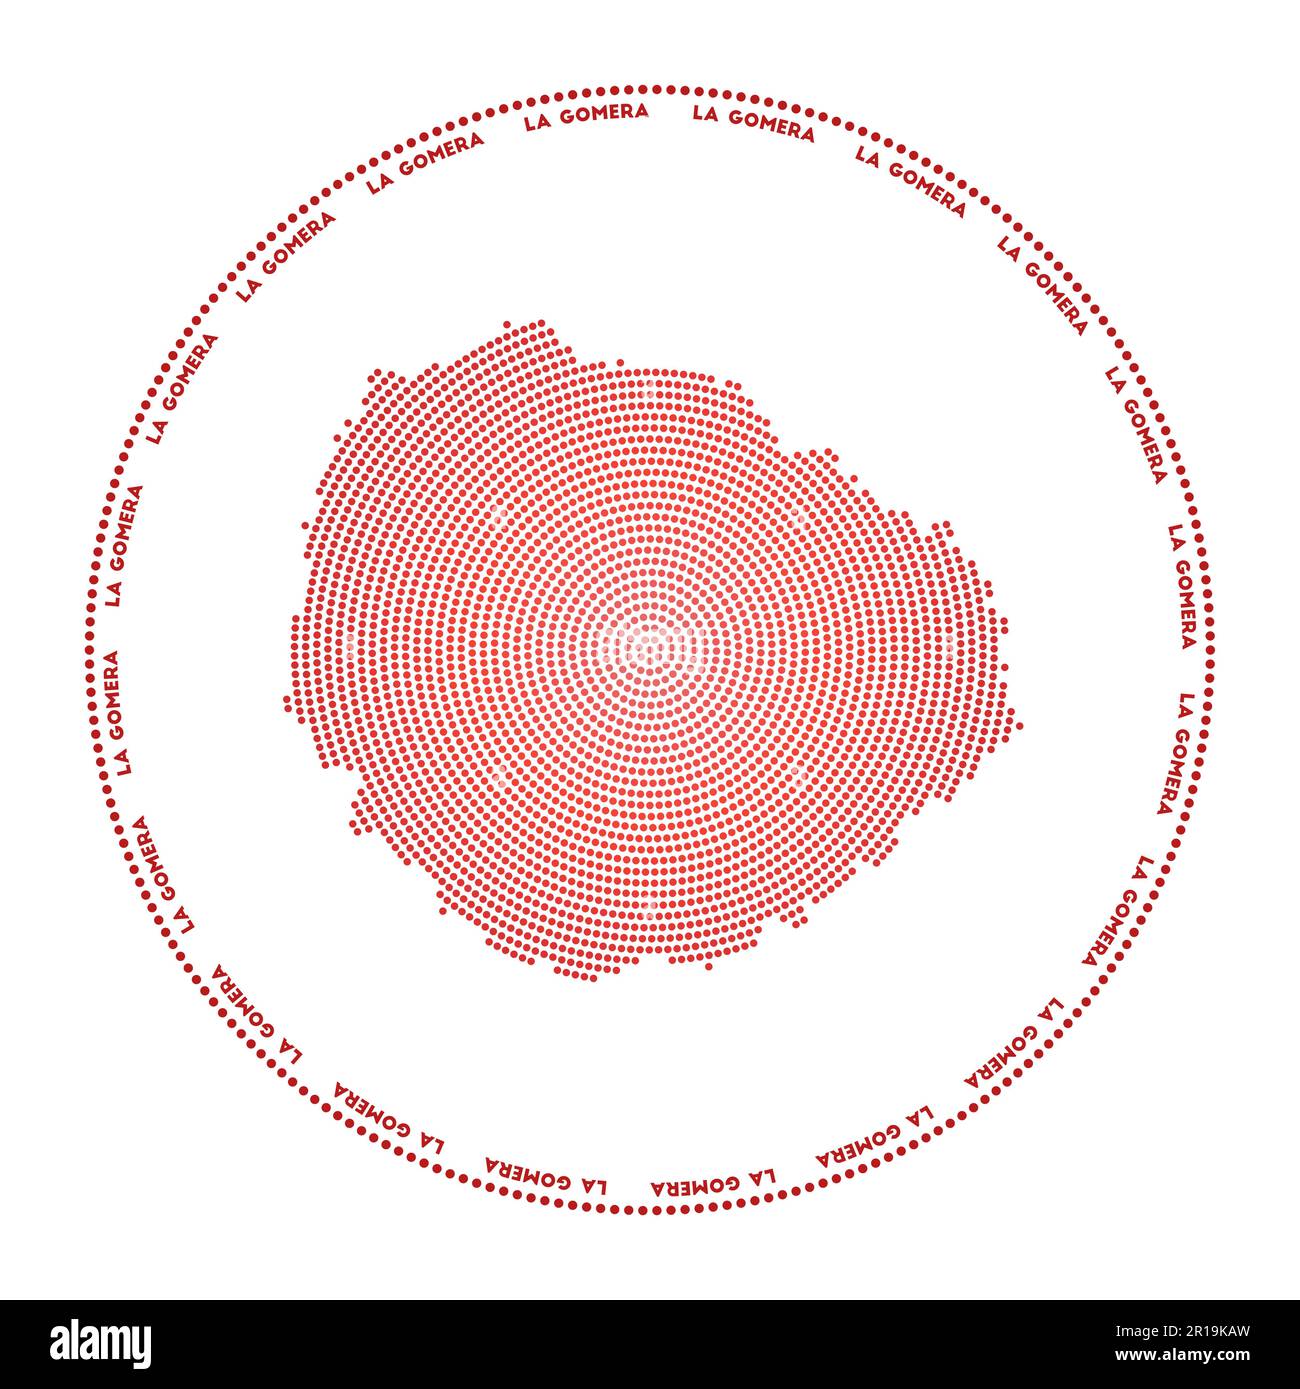 Rundes Logo von La Gomera. Digitale Form von La Gomera in gepunktetem Kreis mit Inselname. Technisches Symbol der Insel mit abgestuften Punkten. Saubere Vektor-Il Stock Vektor